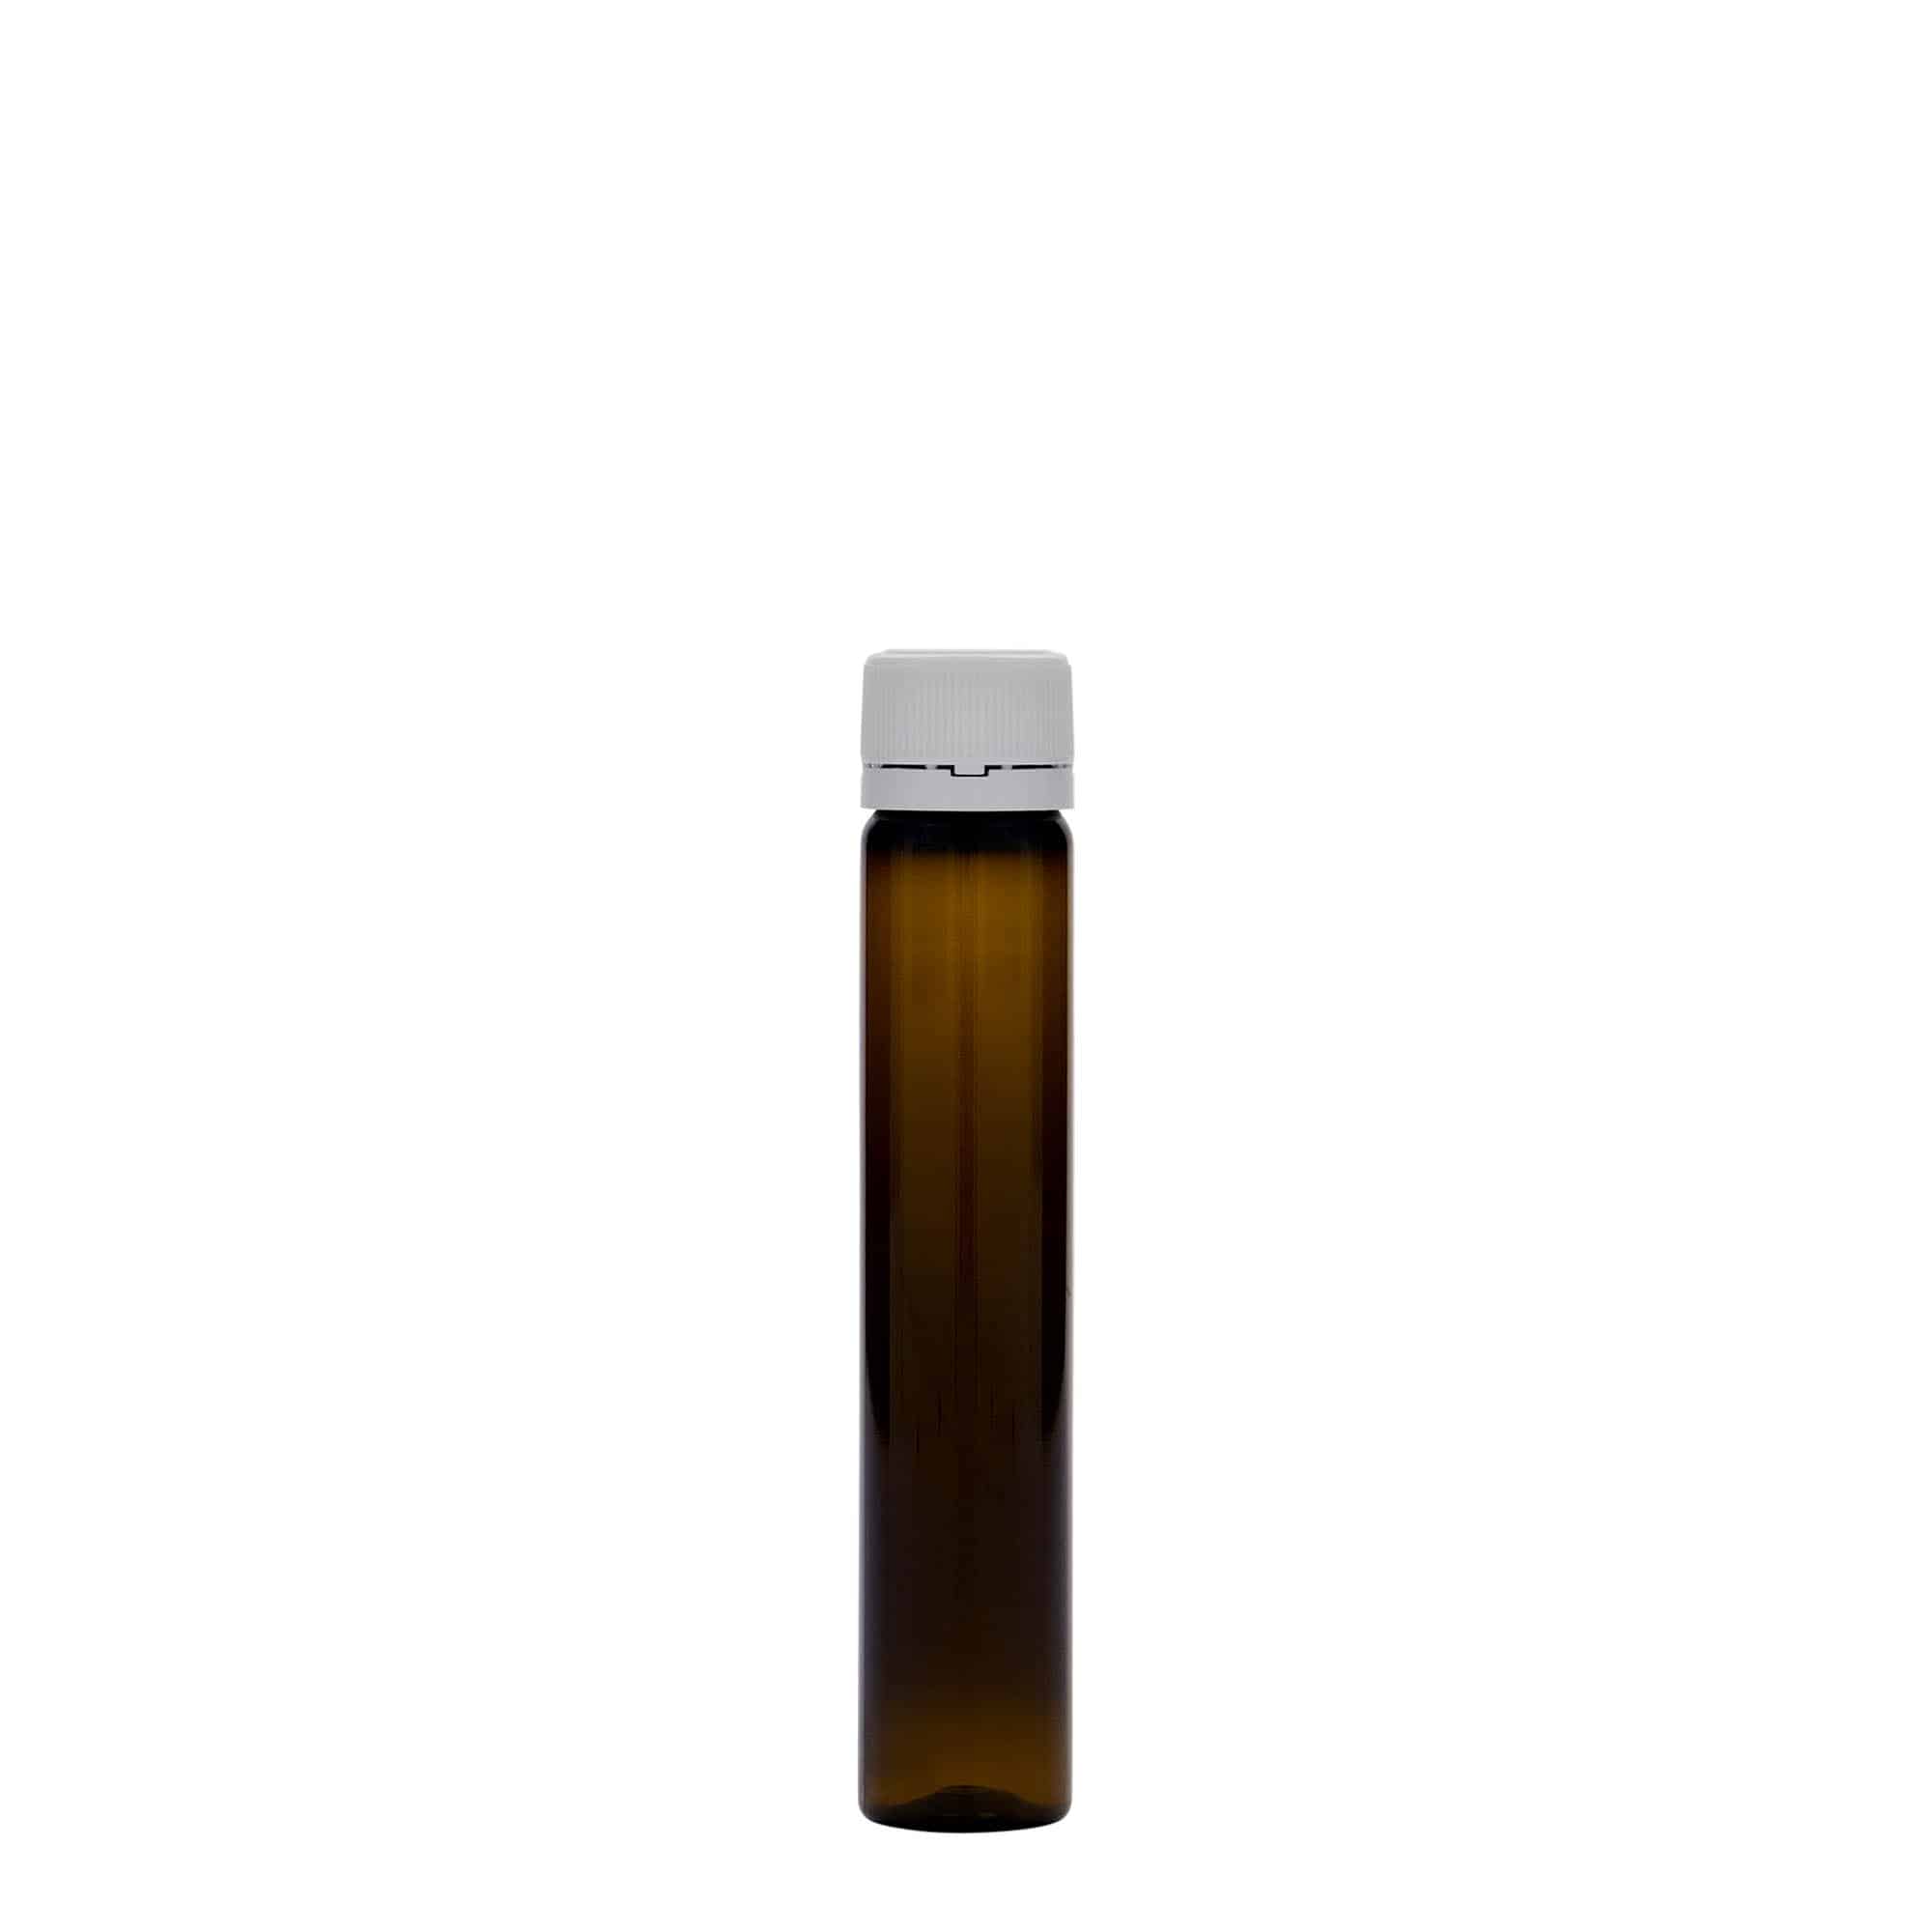 25 ml-es PET-cső, műanyag, barna, szájnyílás: csavaros kupak